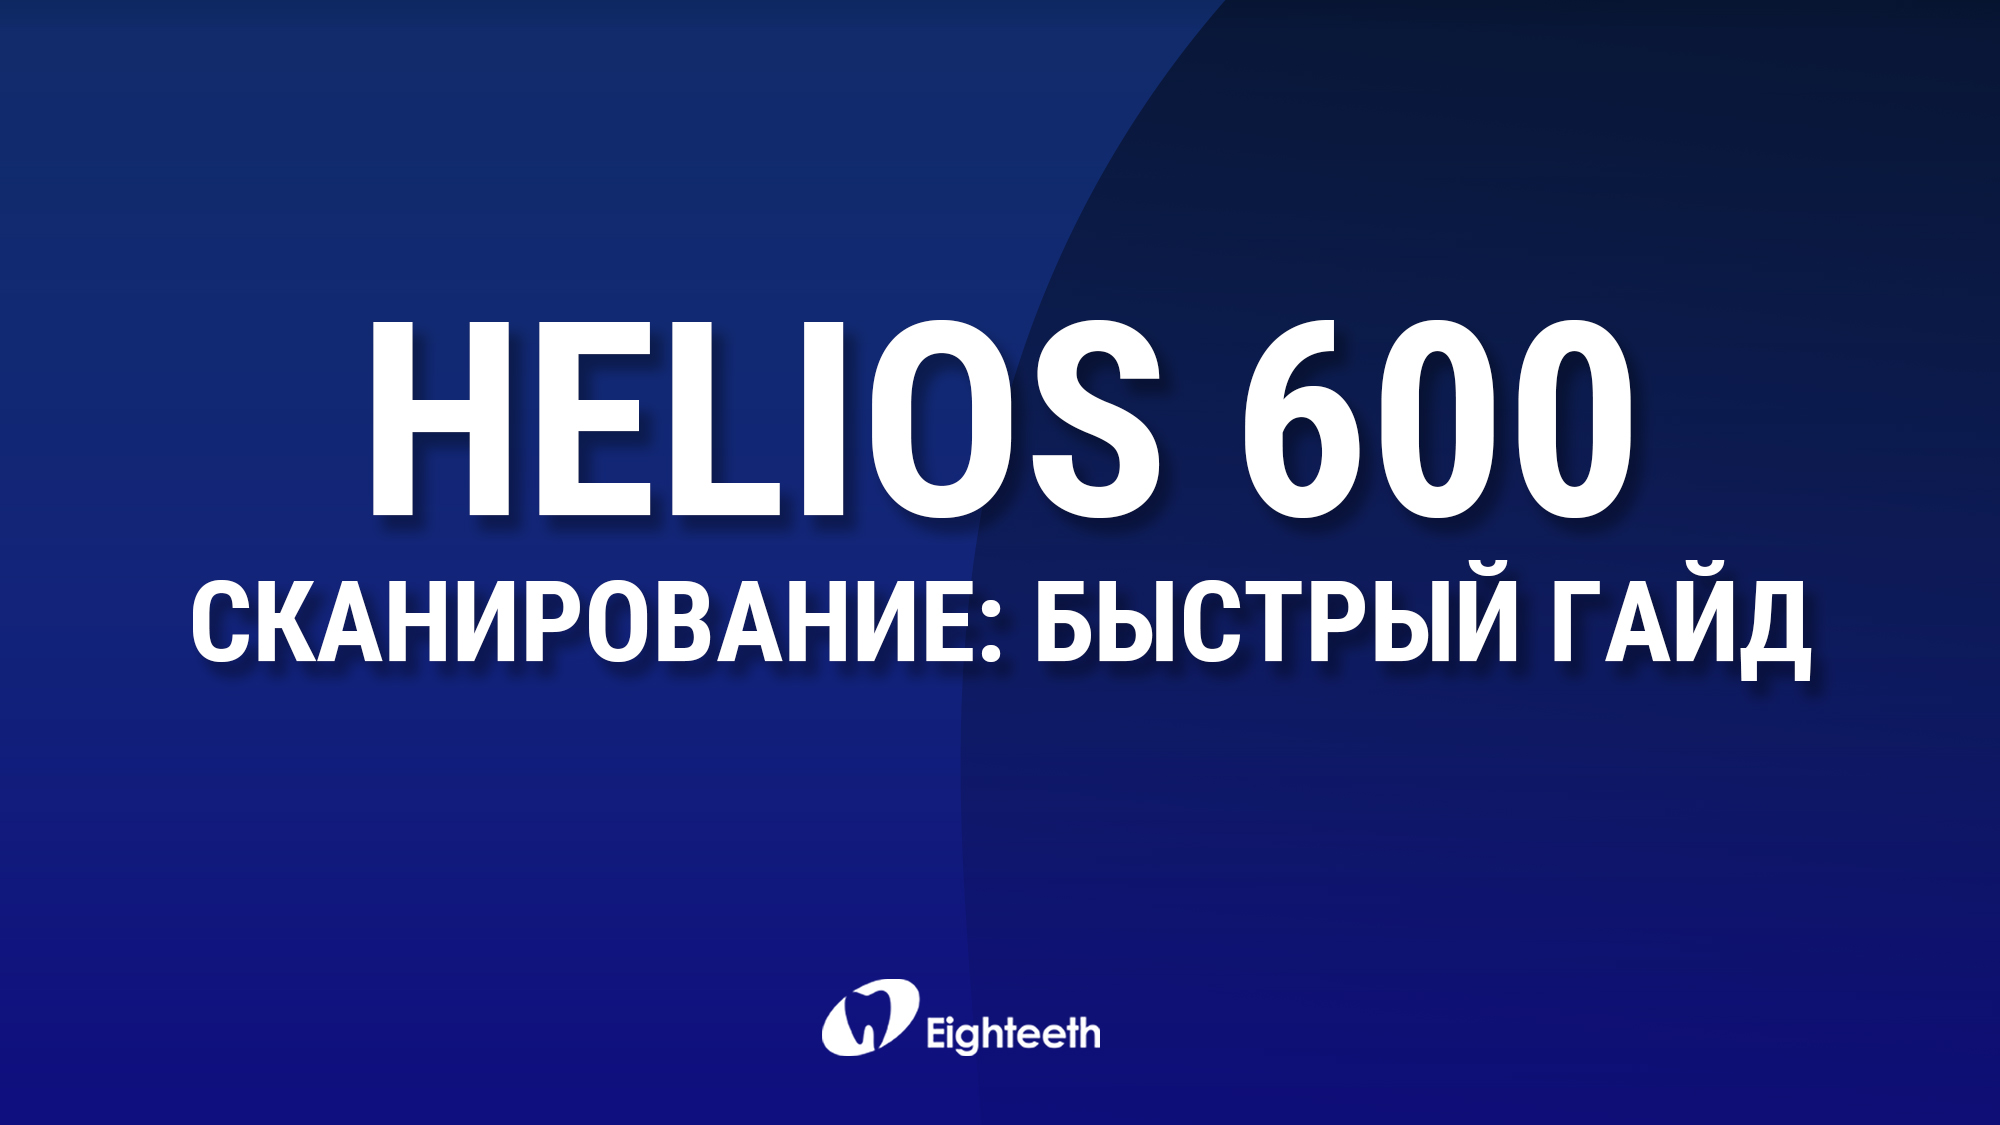 Helios 600 - быстрый гайд по сканированию